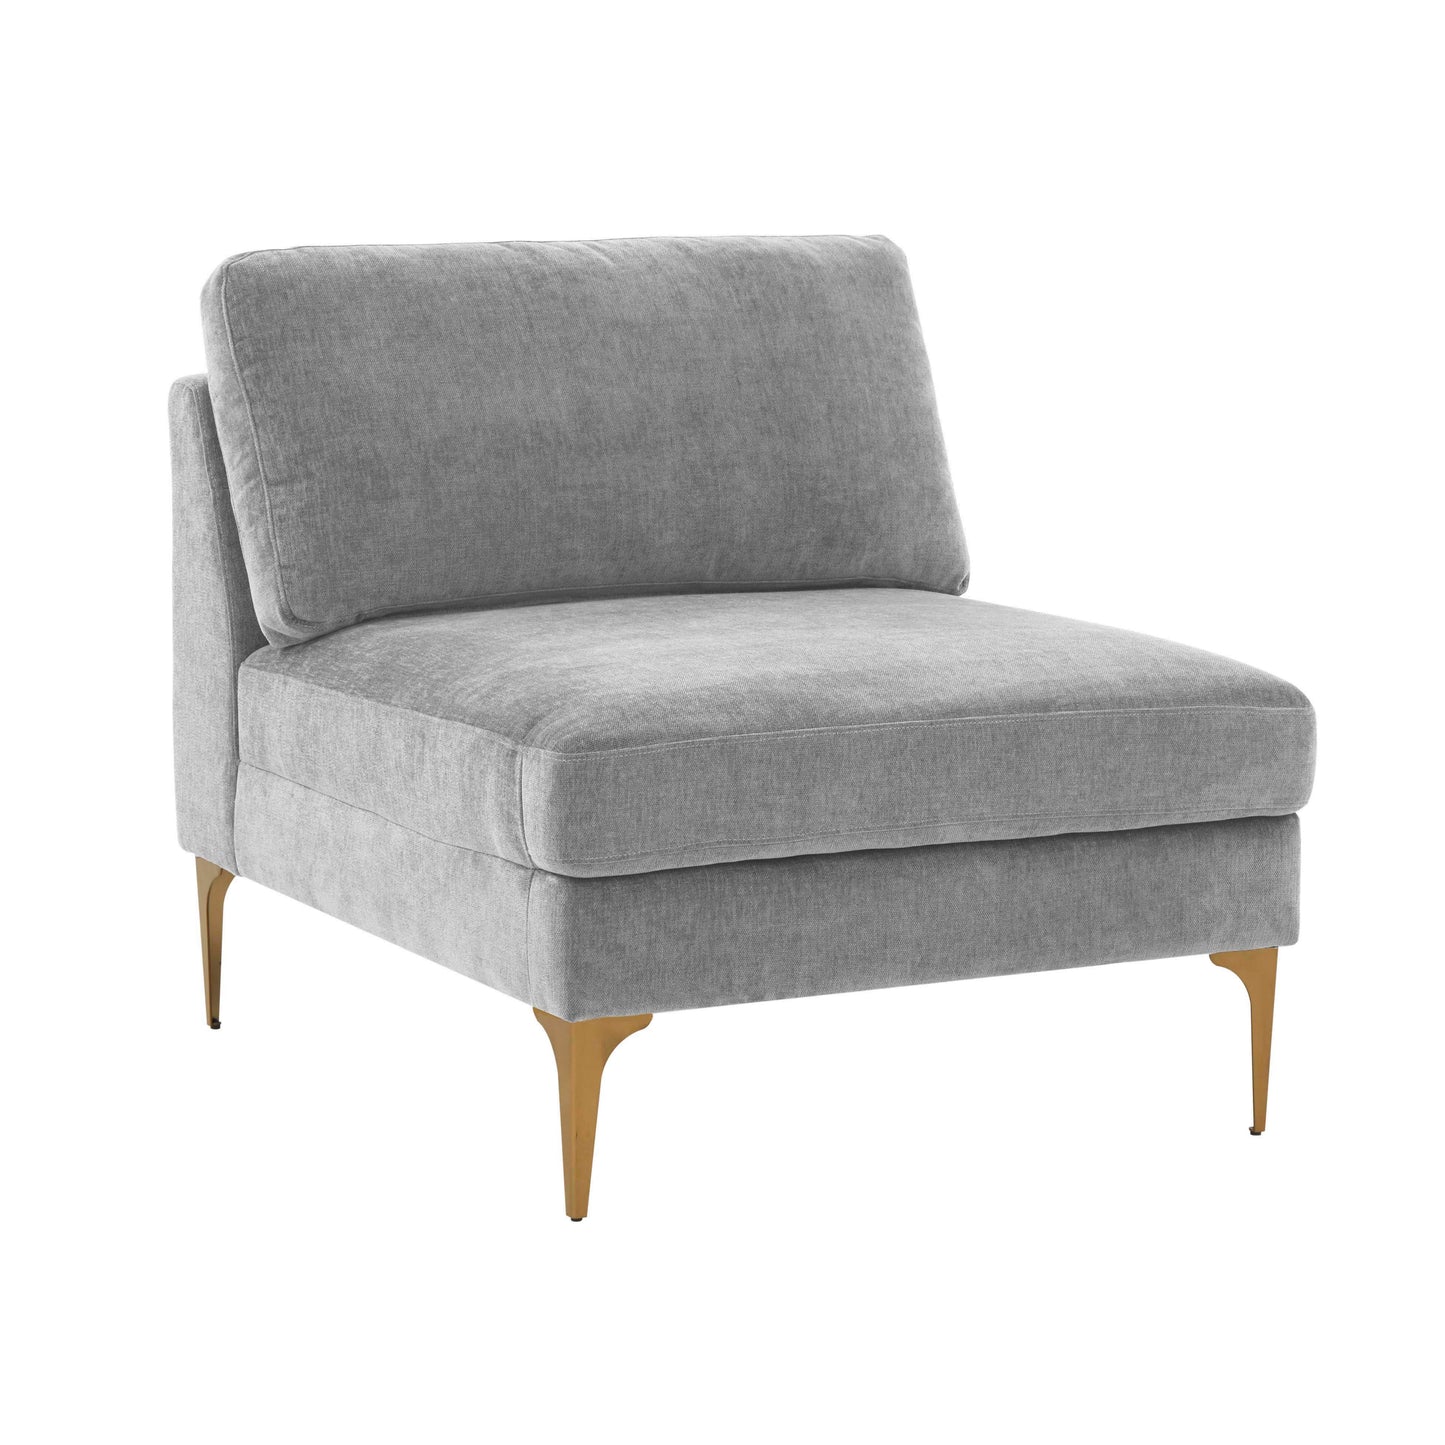 Tov Furniture Serena Gray Velvet Armless Chair with Black Leg